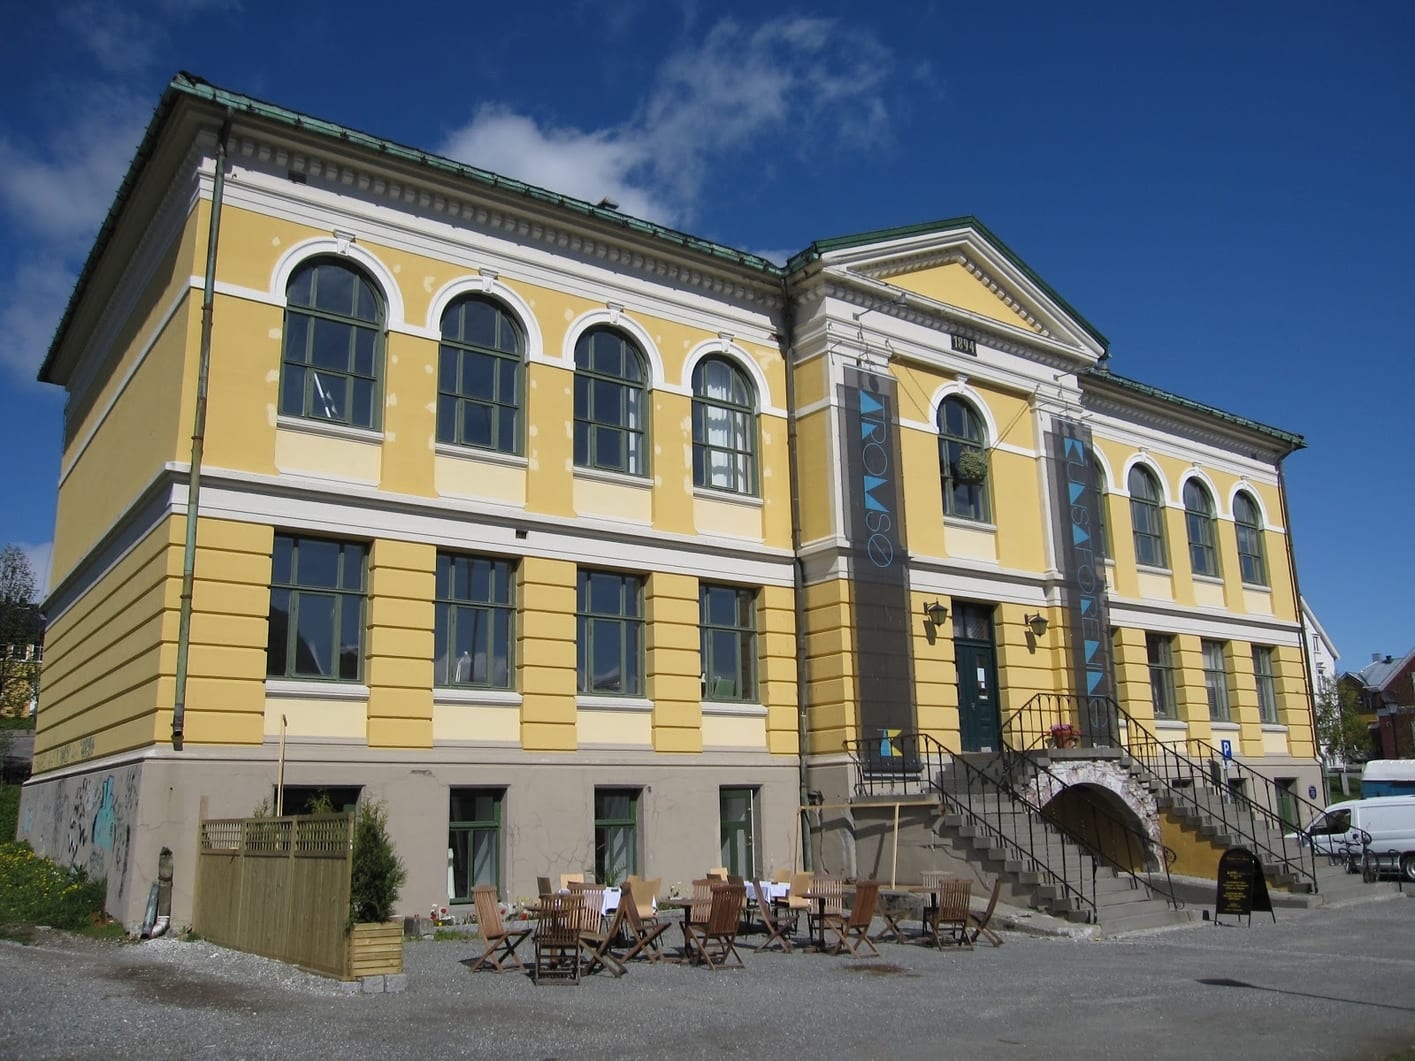 Centro de Arte Contemporáneo de Tromso, museo de tromso noruega